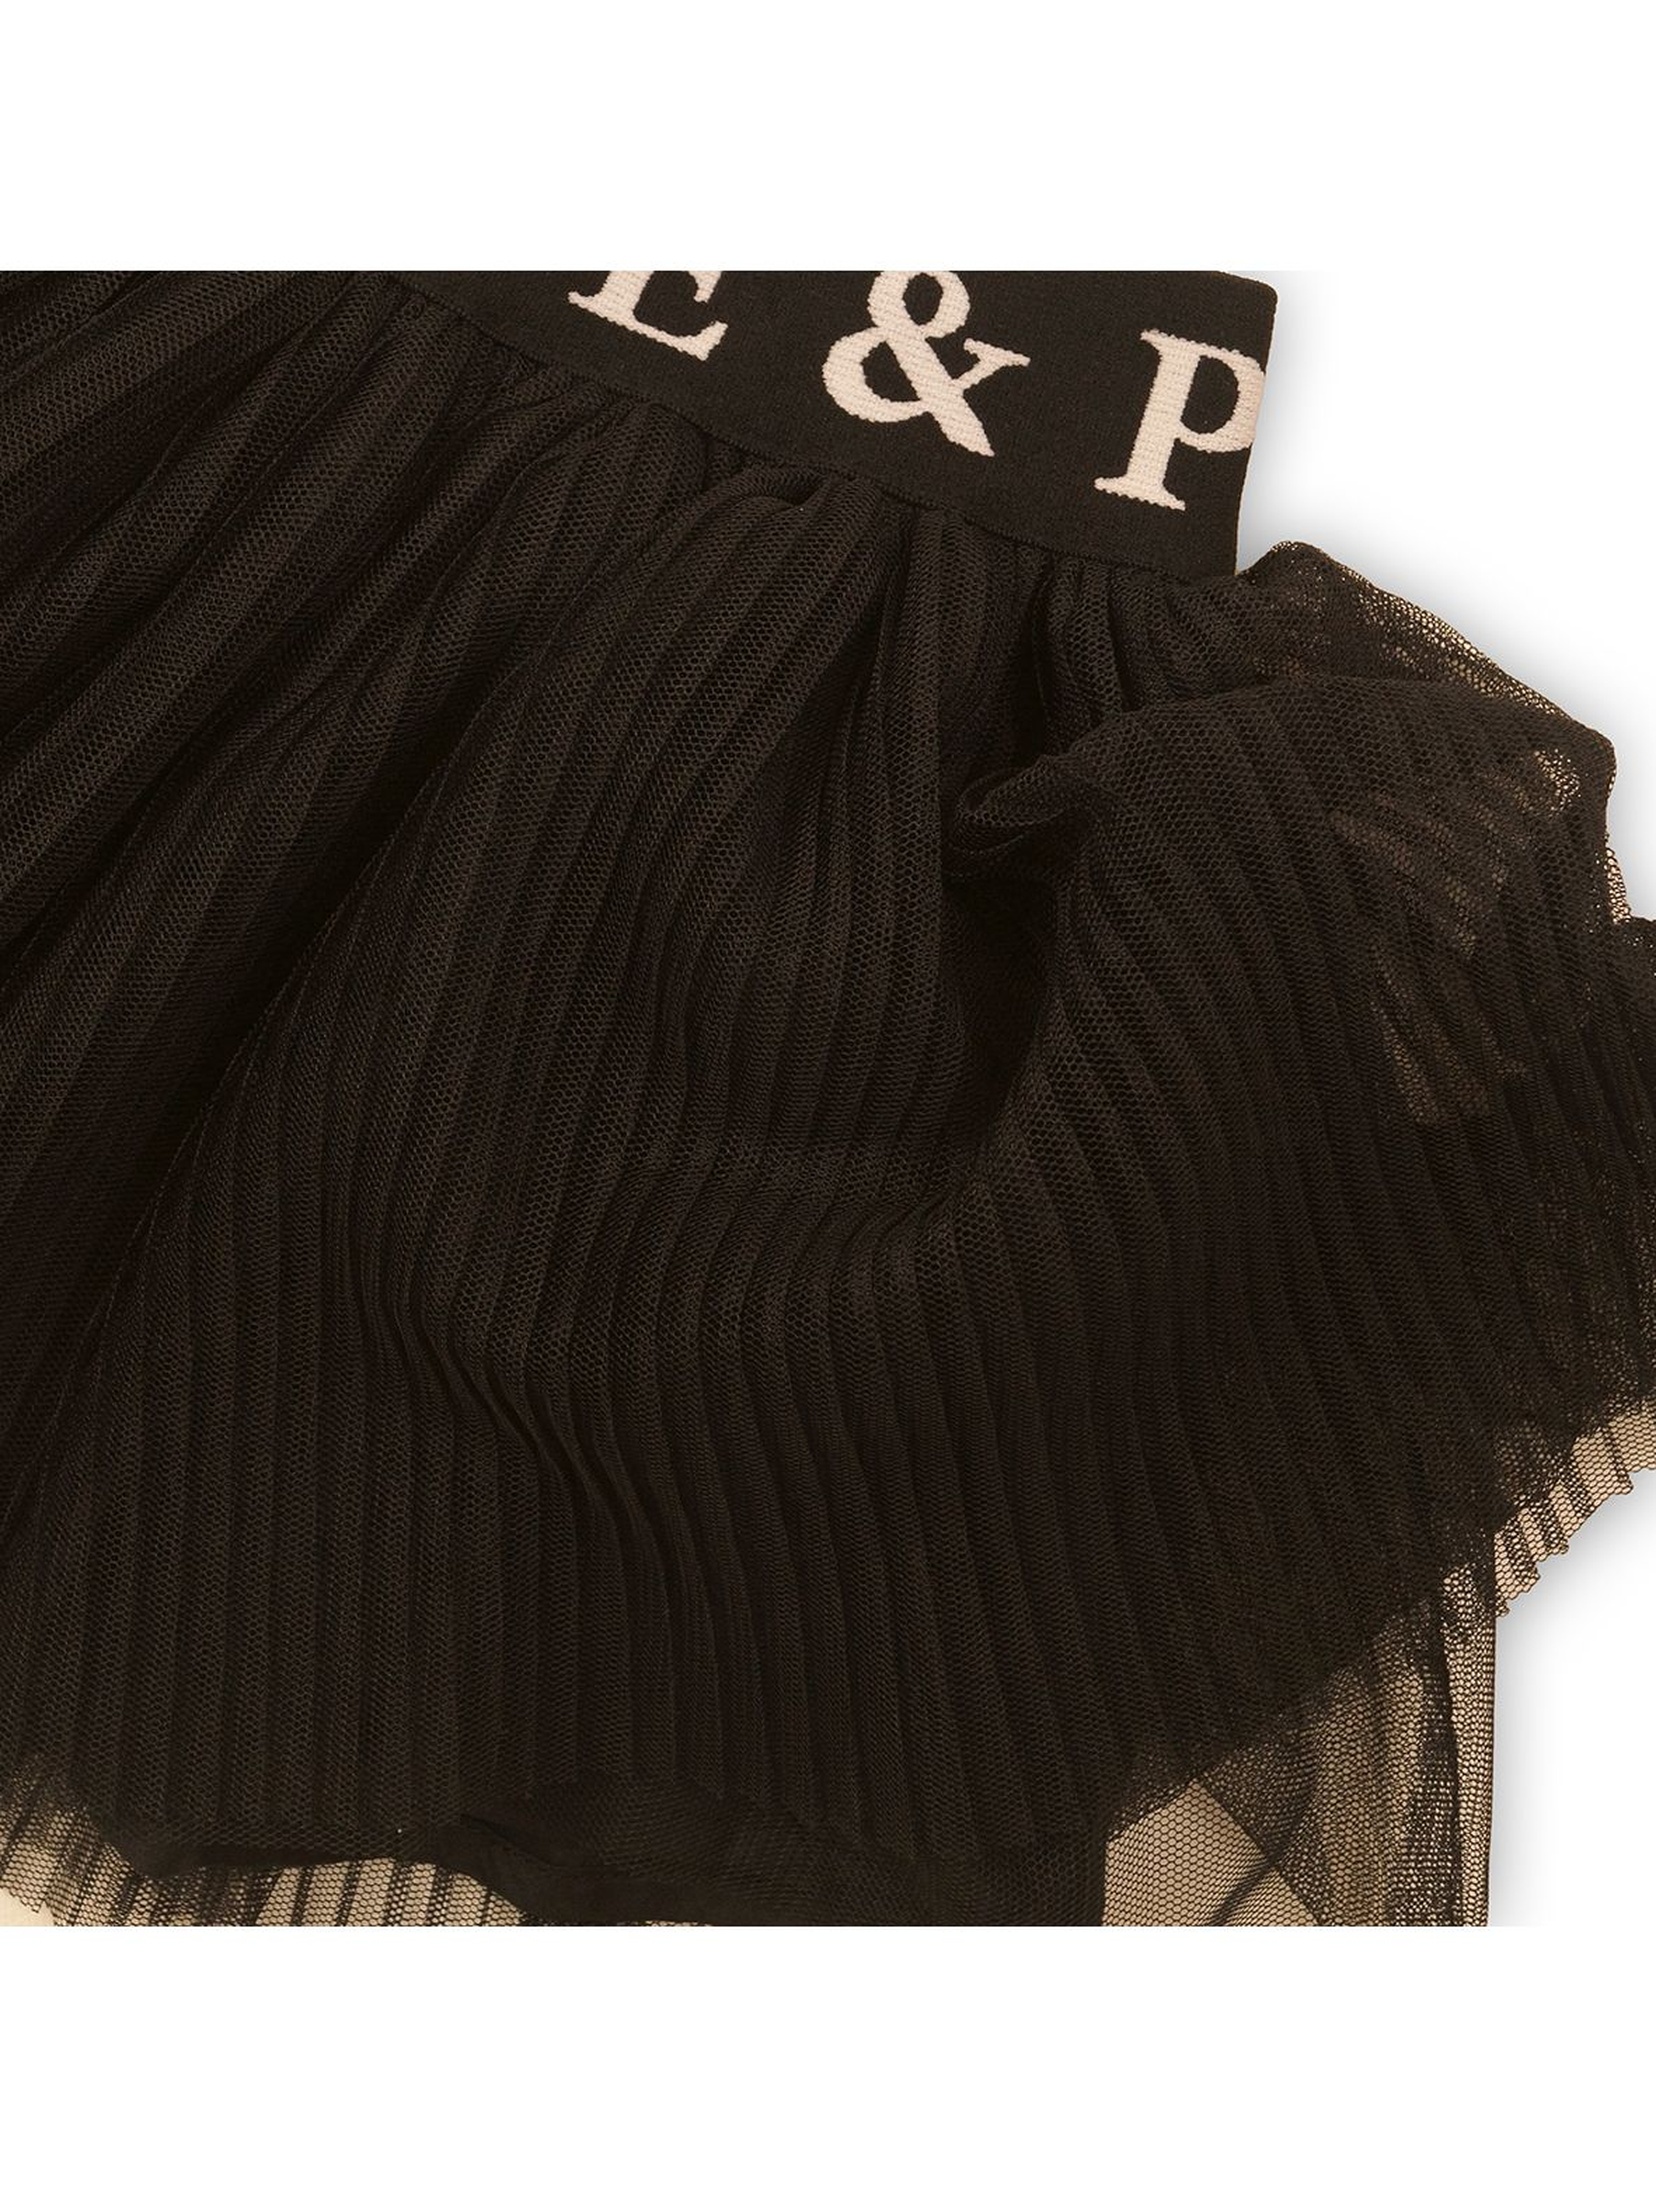 Spódnica czarna plisowana z napisami na gumce